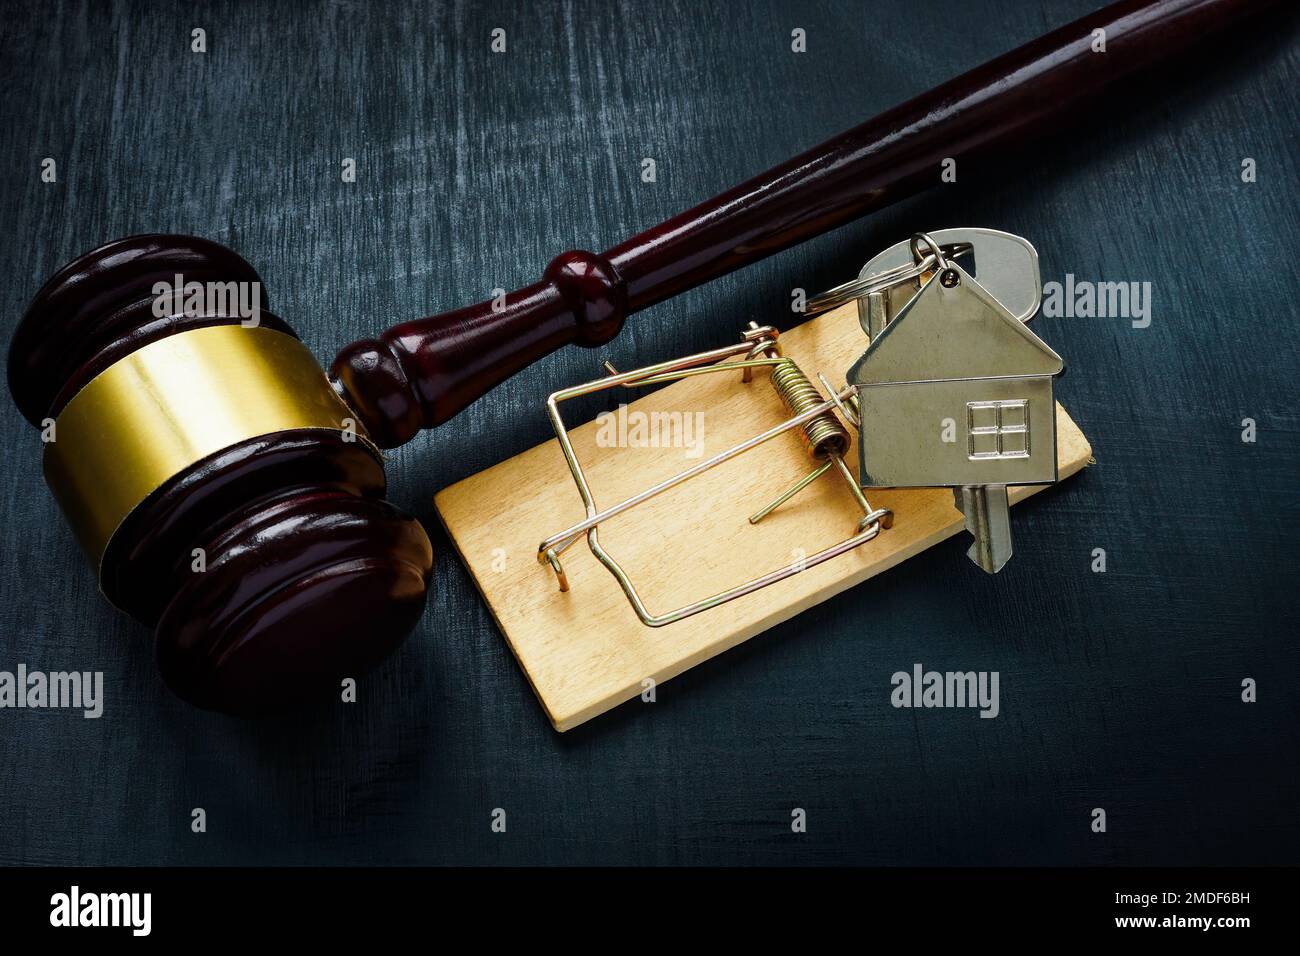 Un piège et une clé de maison à côté du gavel. Concept de fraude de loyer immobilier. Banque D'Images